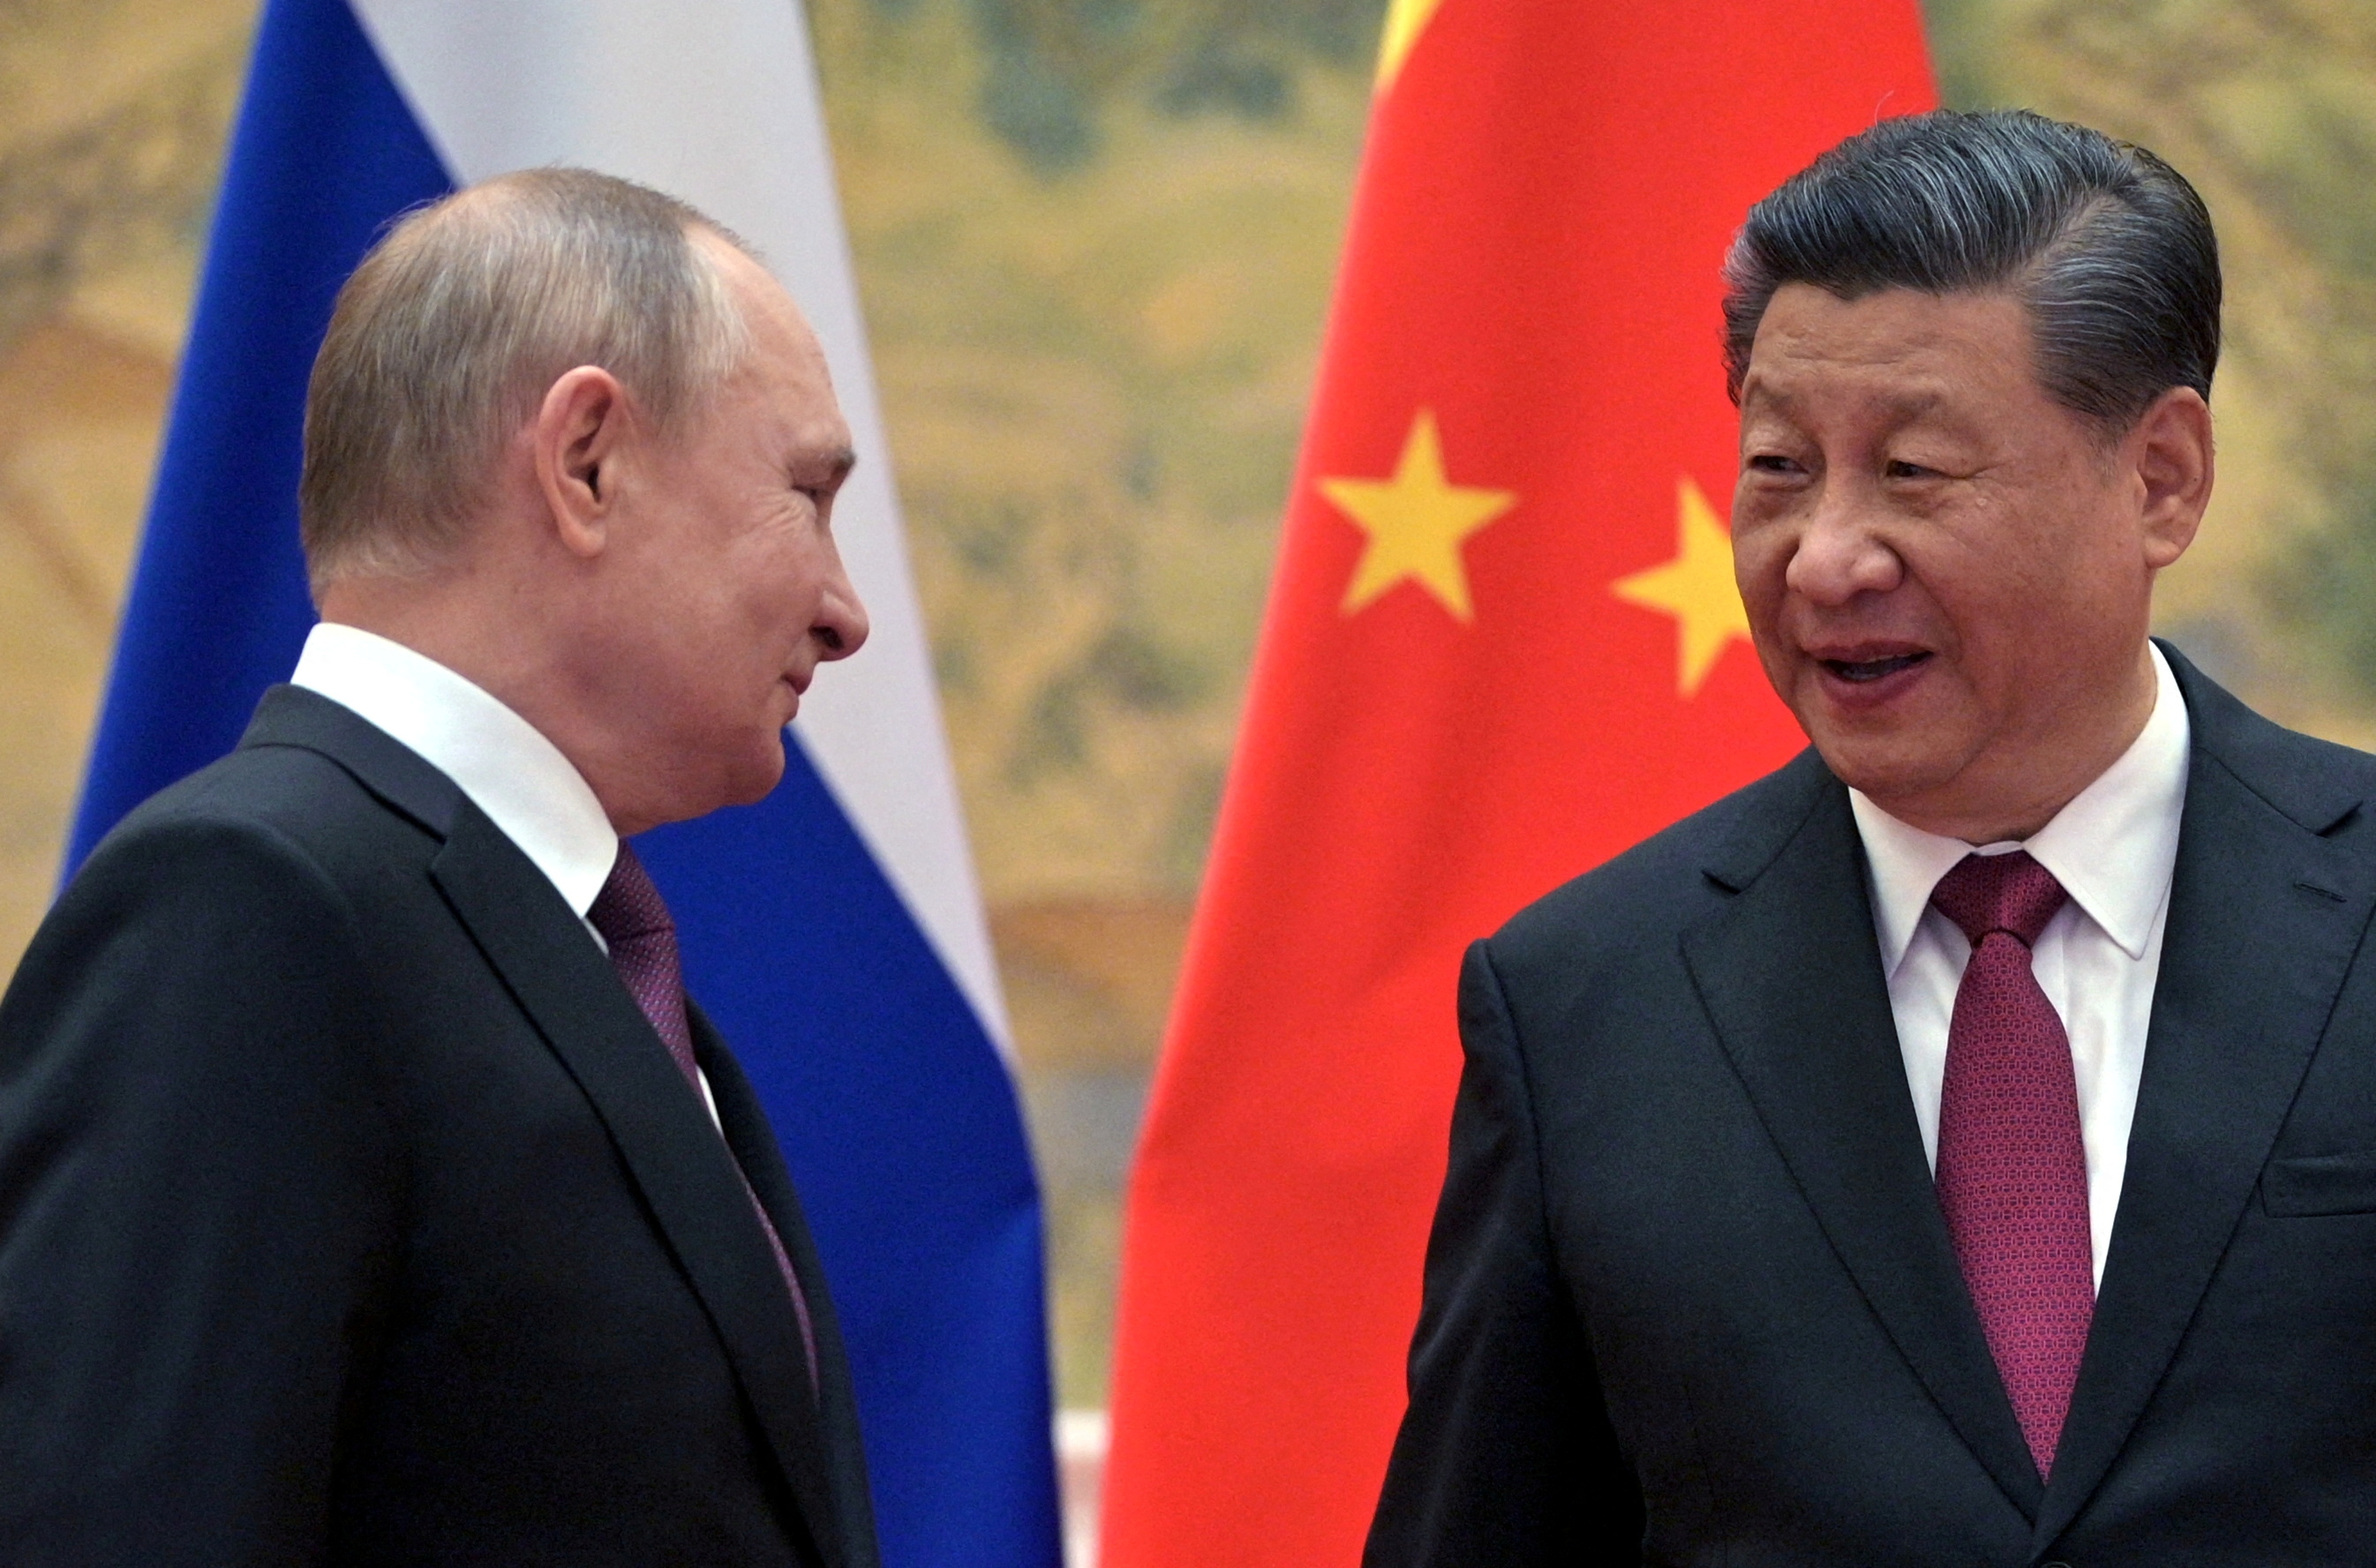 El dictador de Moscú, Vladimir Putin, con el jefe de estado chino, Xi Jinping, el 4 de febrero último tras firmar un largo acuerdo de alianza estratégica entre ambas potencias. Faltaban 20 días para la invasión a Ucrania (Reuters)